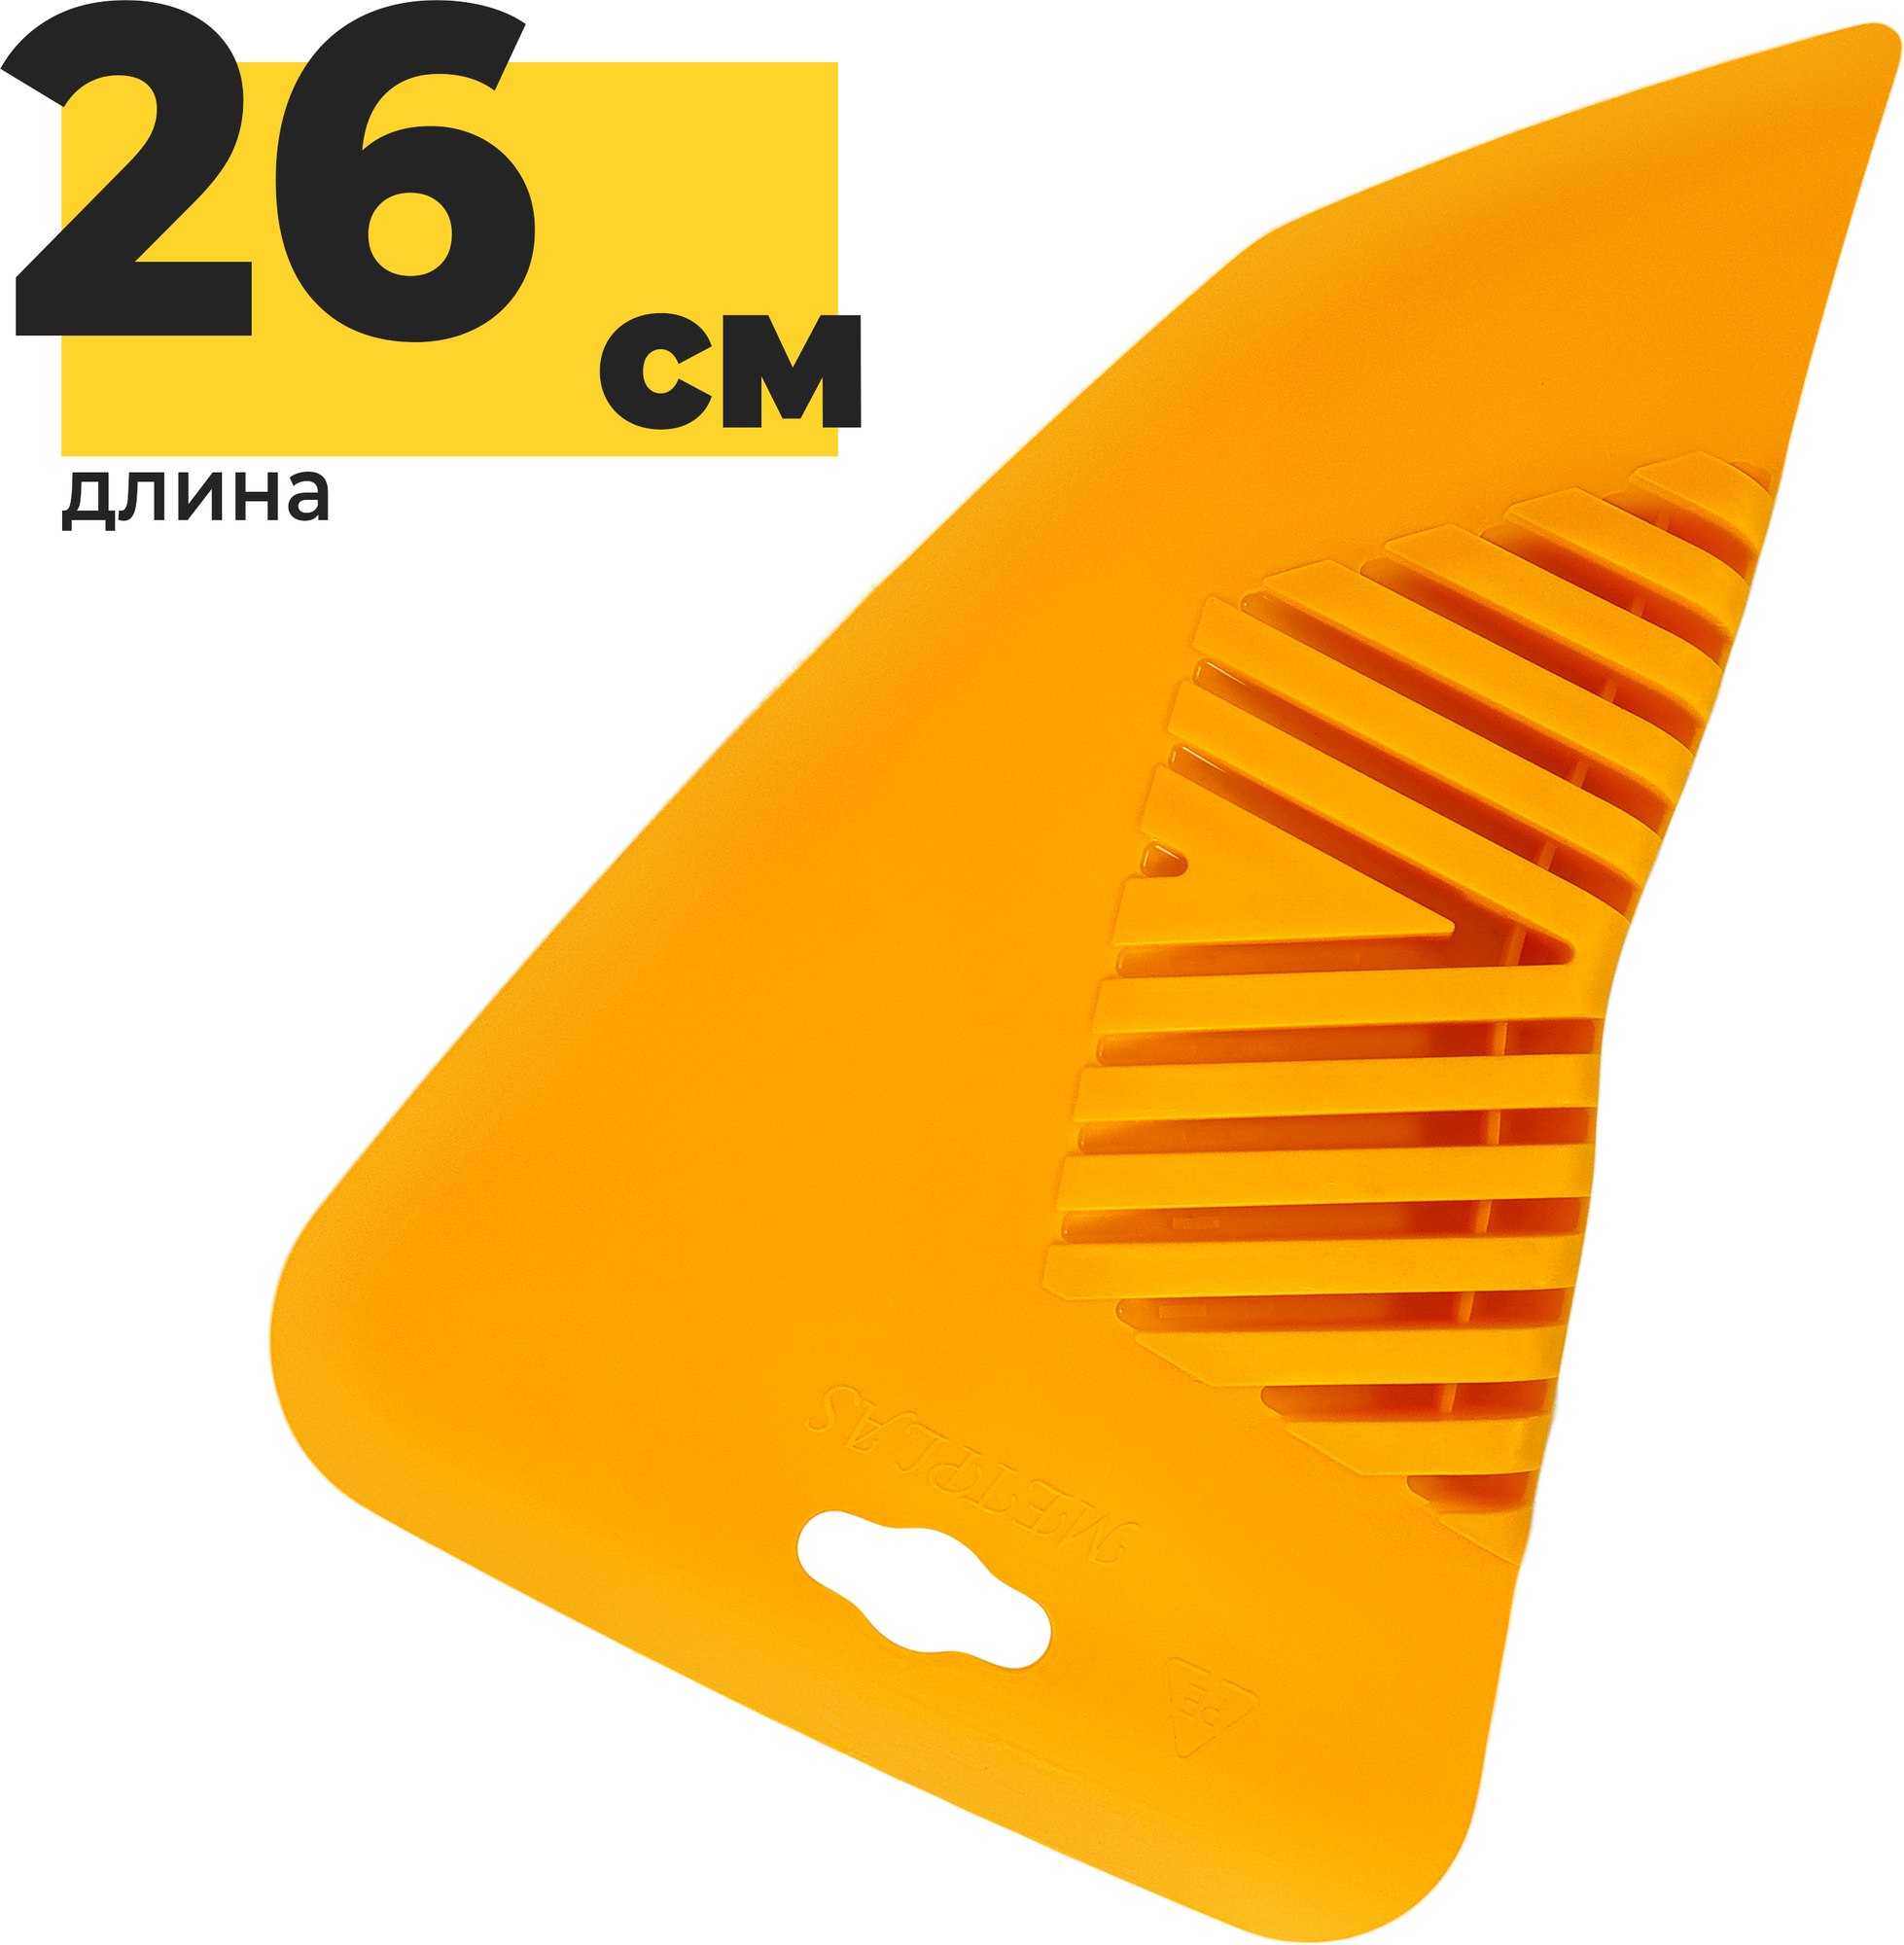 Шпатель для разглаживания обоев Yoma Home 26 универсальный пластиковый желтый